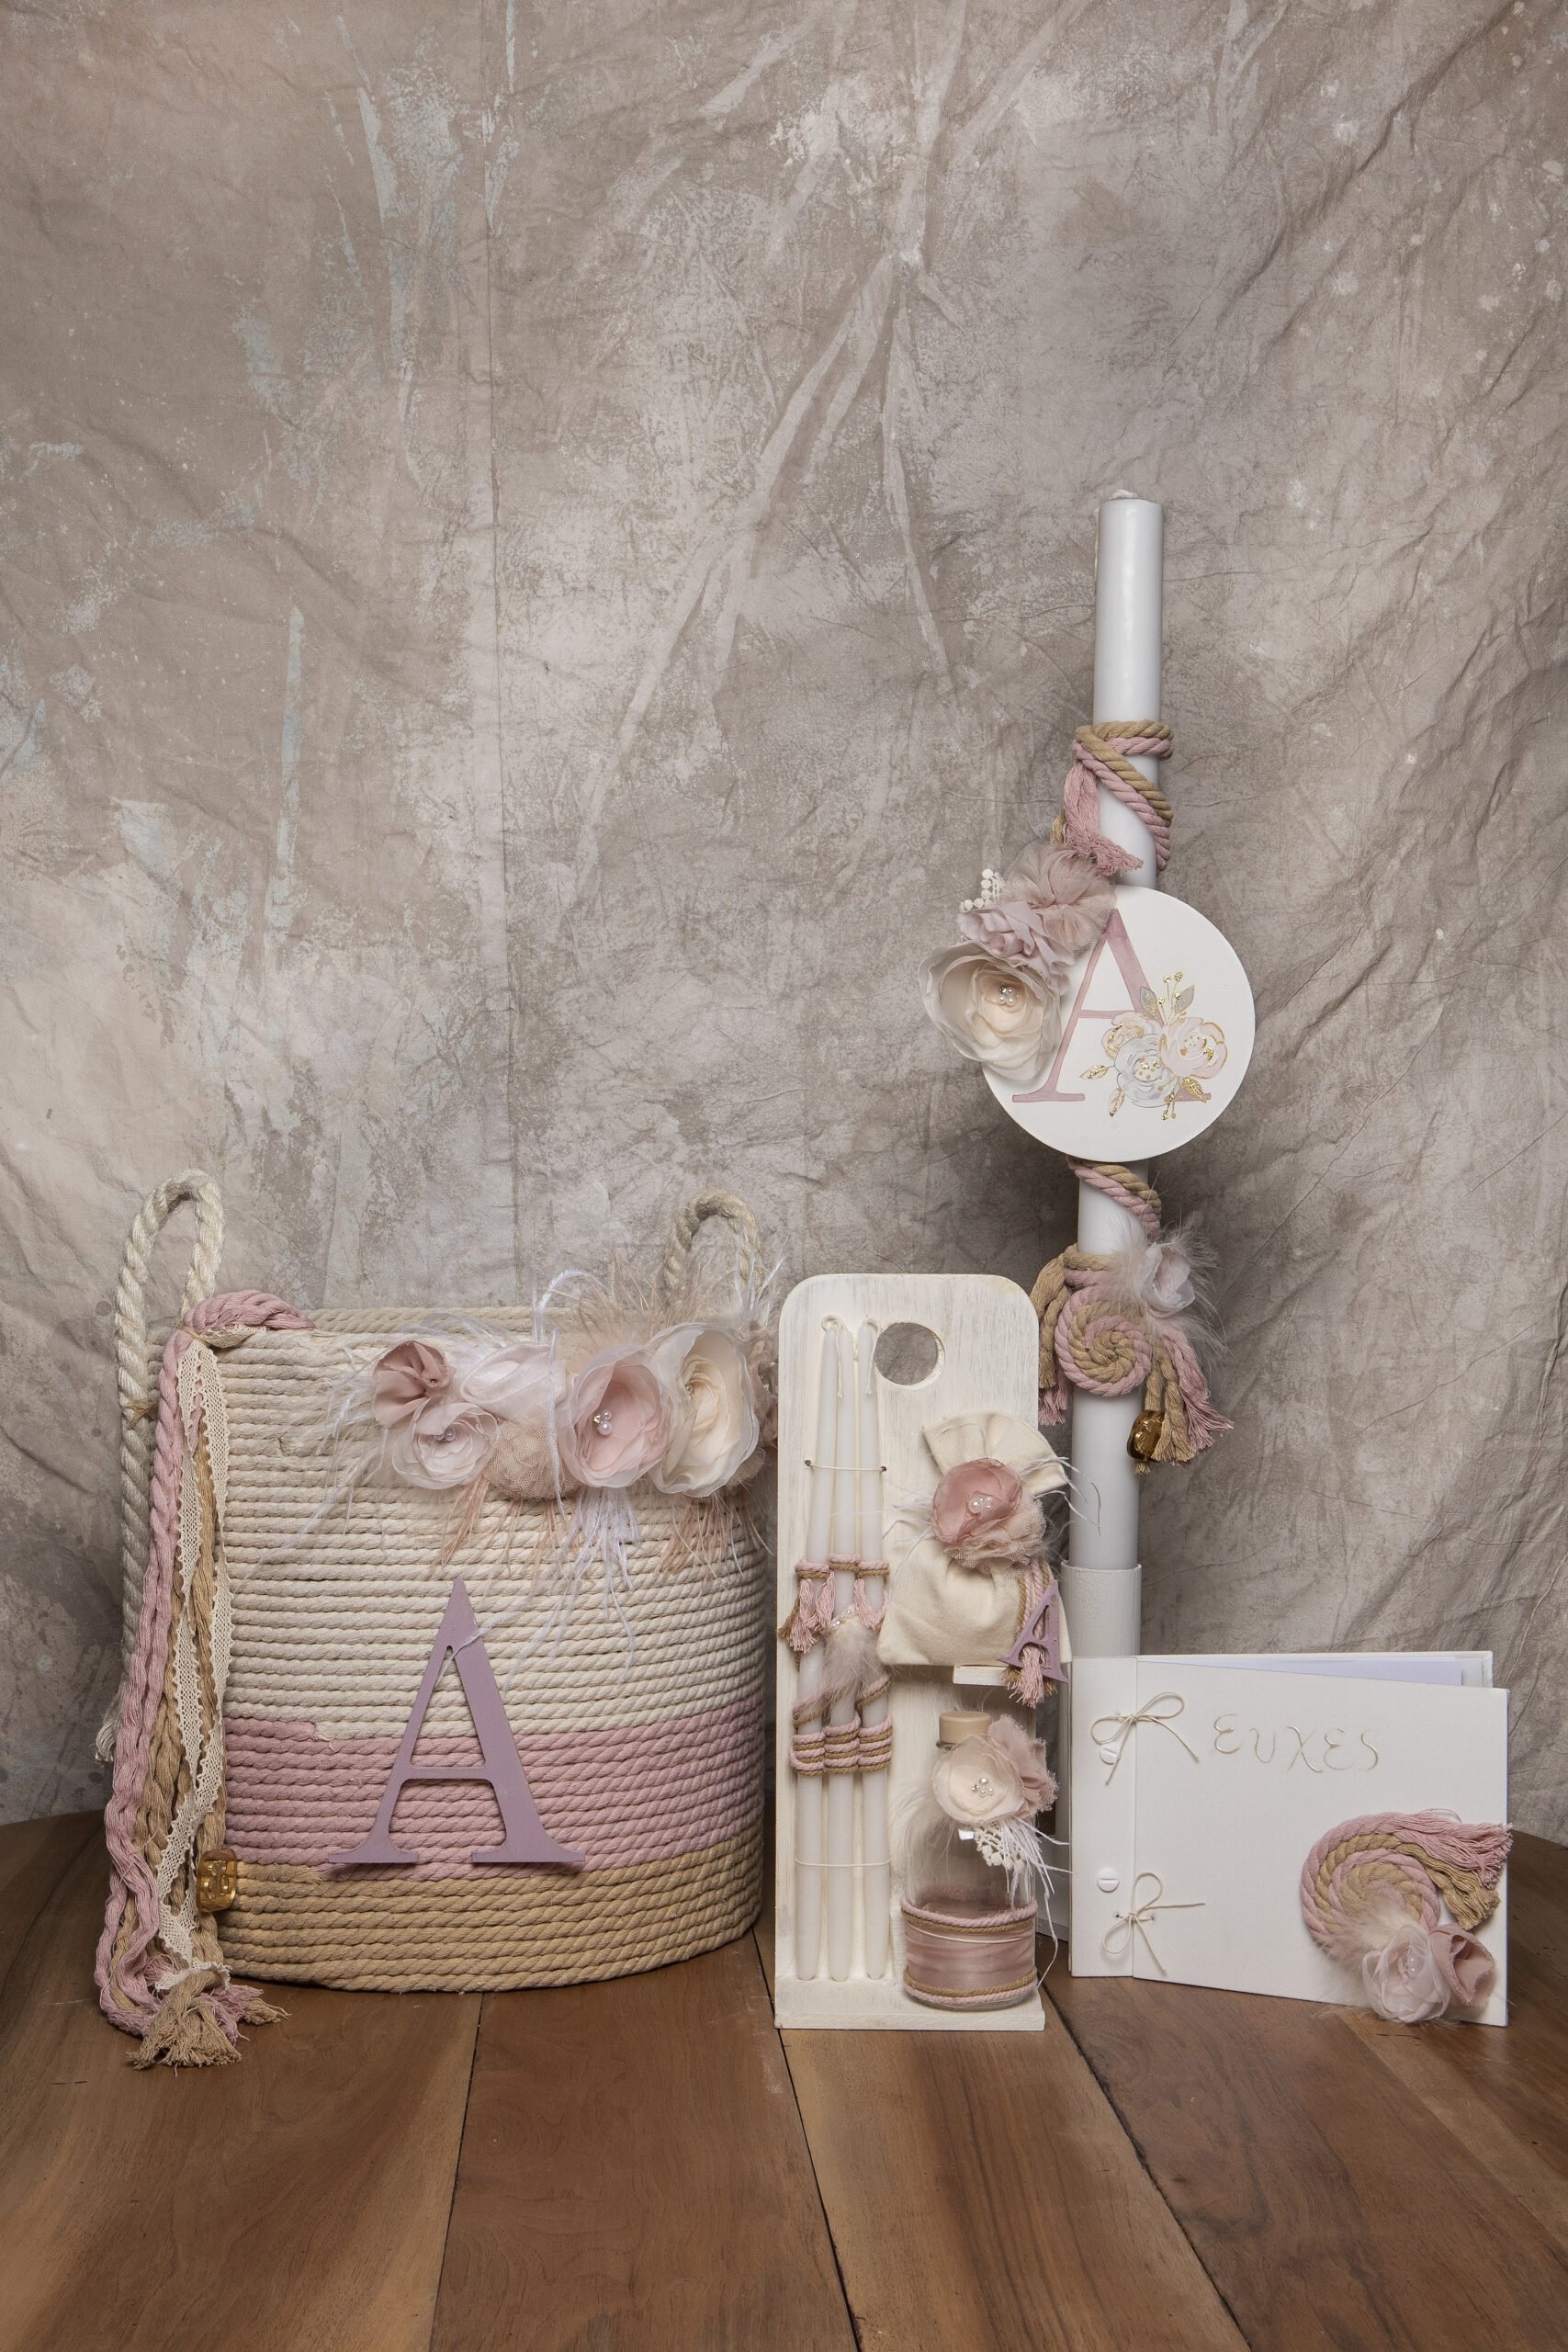 βαπτιστικό σετ για κορίτσι καλάθι σχοινί καλαθούνα πανέρι στρογγυλό με σχοινί boho λουλούδια λαμπάδα μονόγραμμα : 1